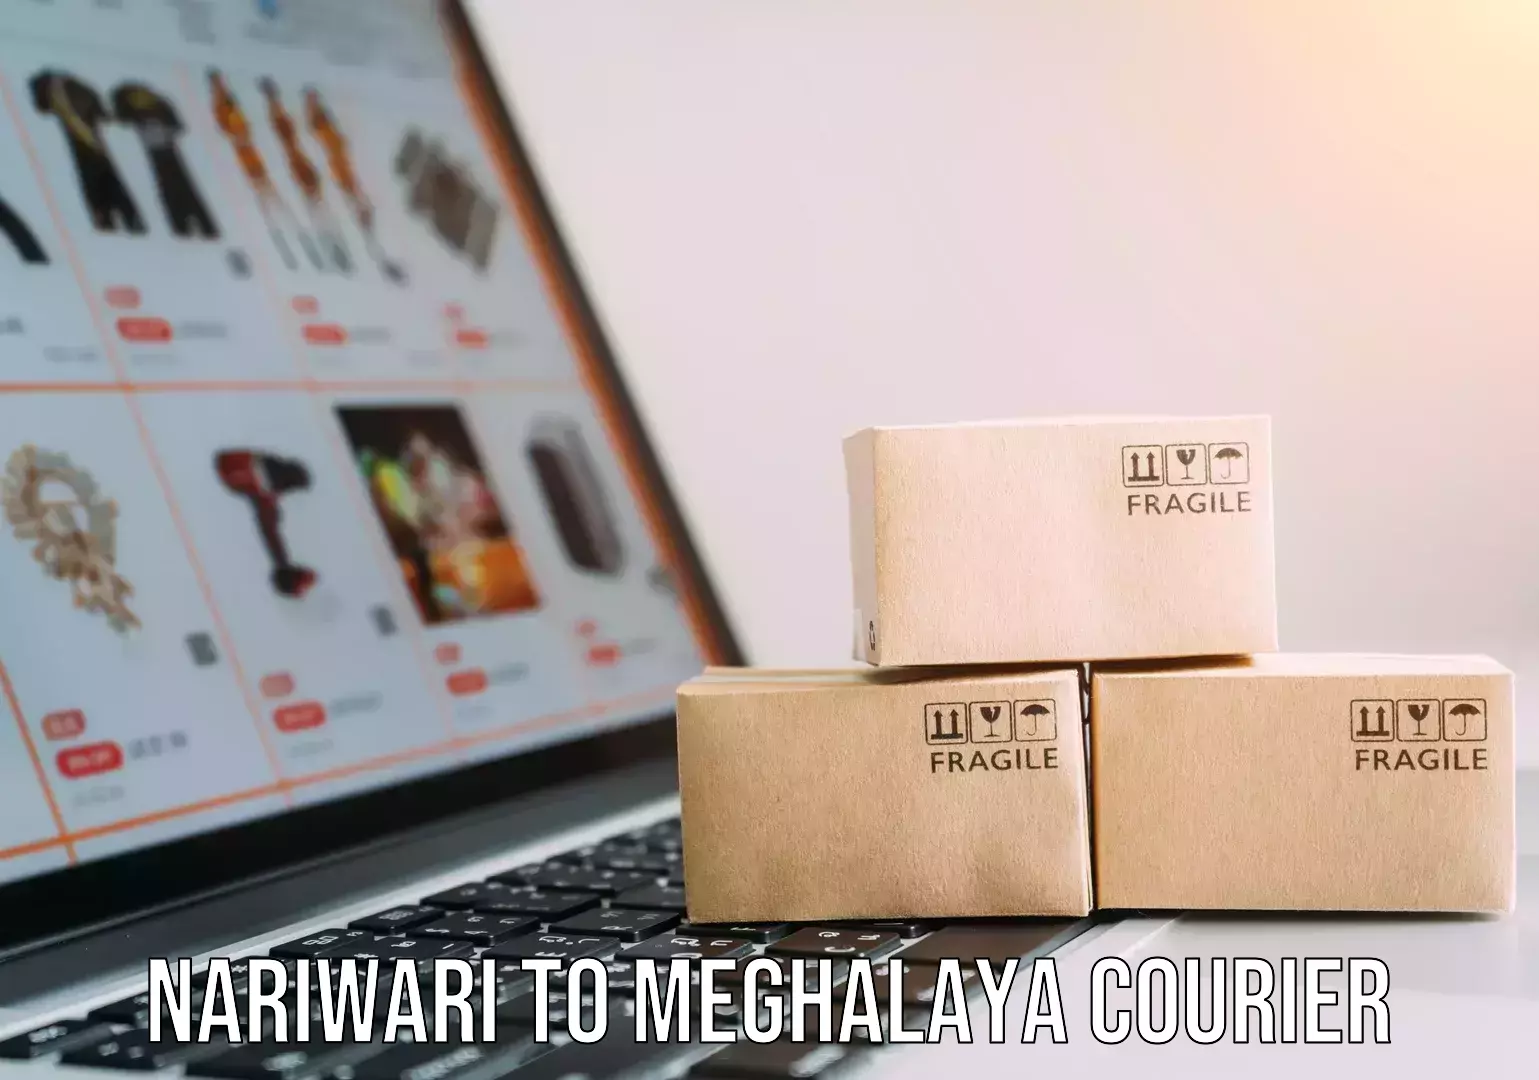 Furniture transport service Nariwari to Meghalaya